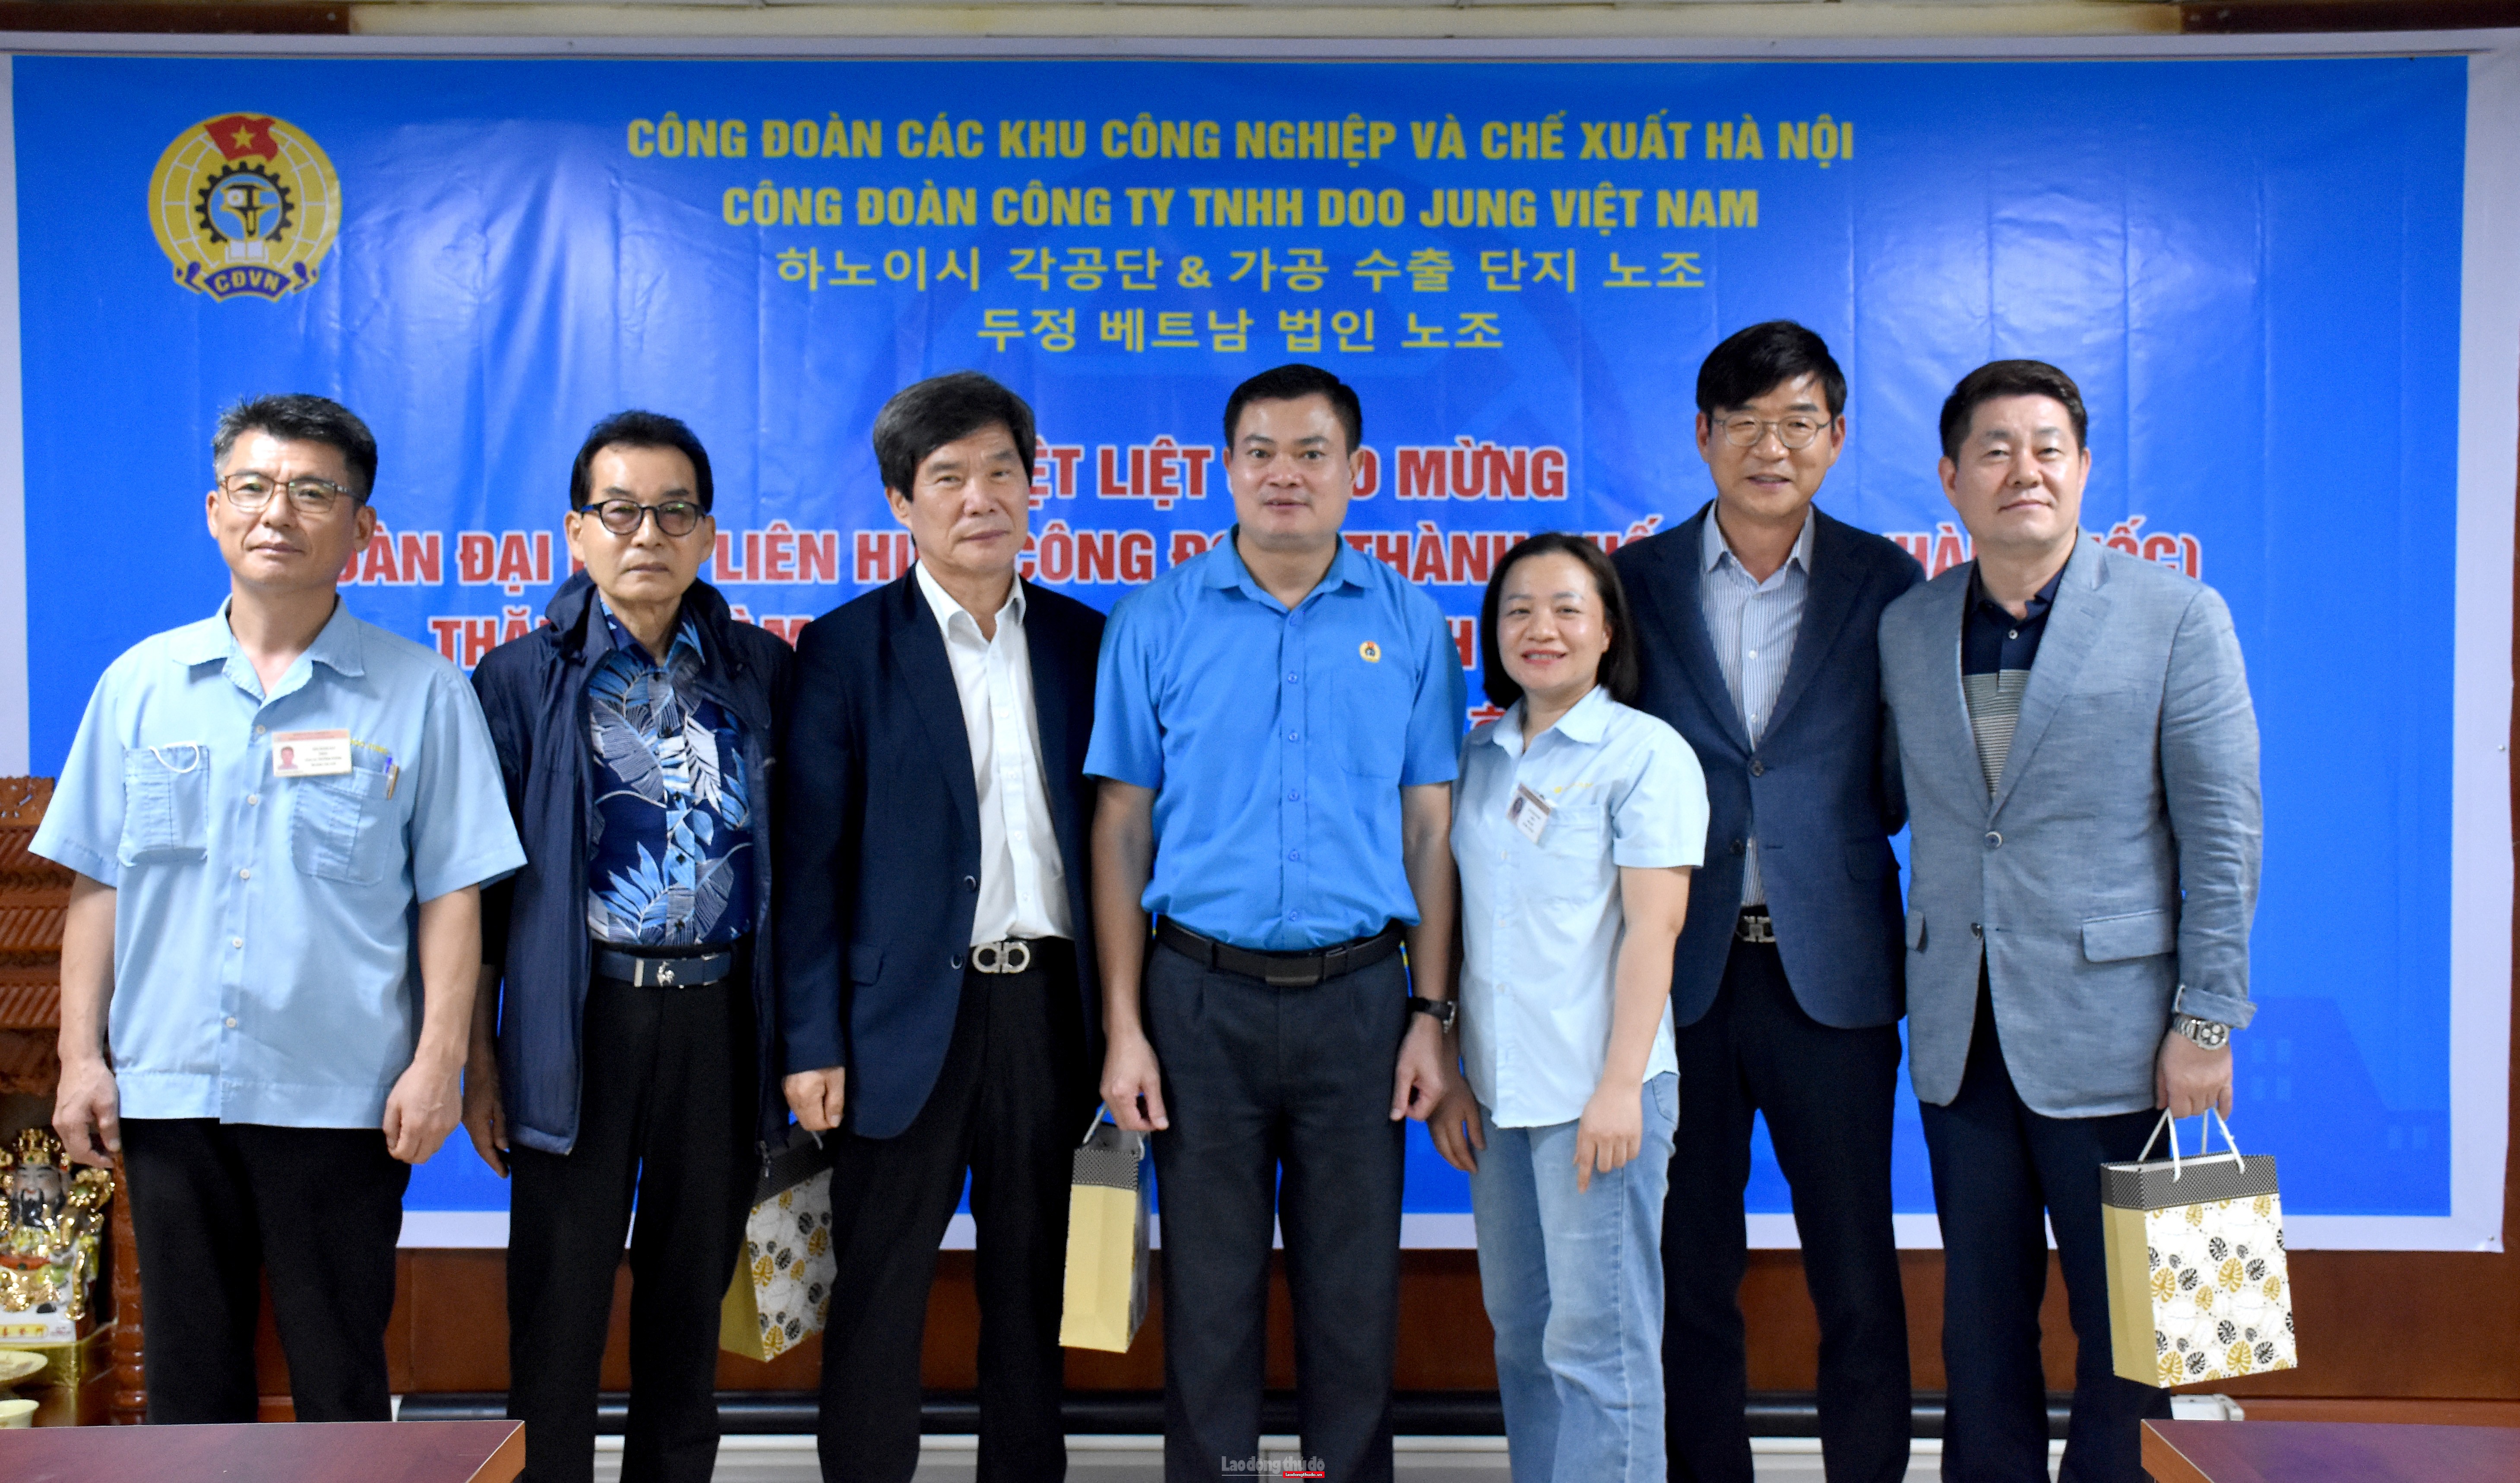 Đoàn đại biểu LHCĐ thành phố Seoul thăm, làm việc tại Công ty TNHH Doo Jung Việt Nam